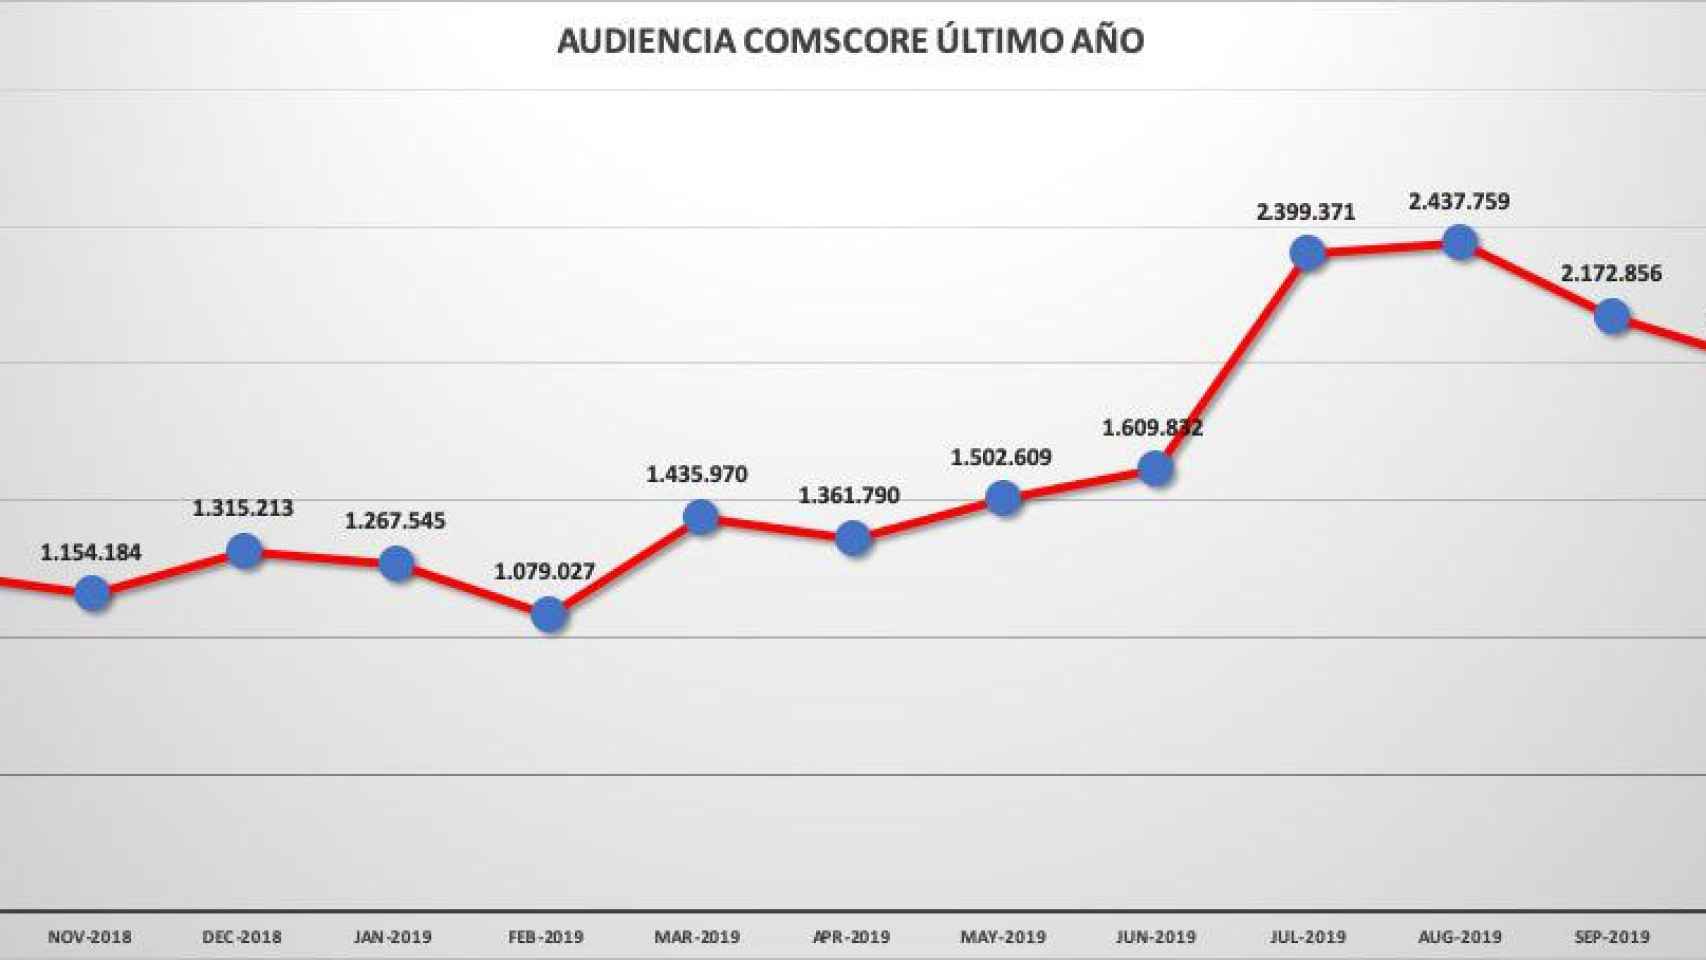 Evolución de la audiencia española desde octubre de 2018 a octubre de 2019 en 'Crónica Global', según Comscore / CG